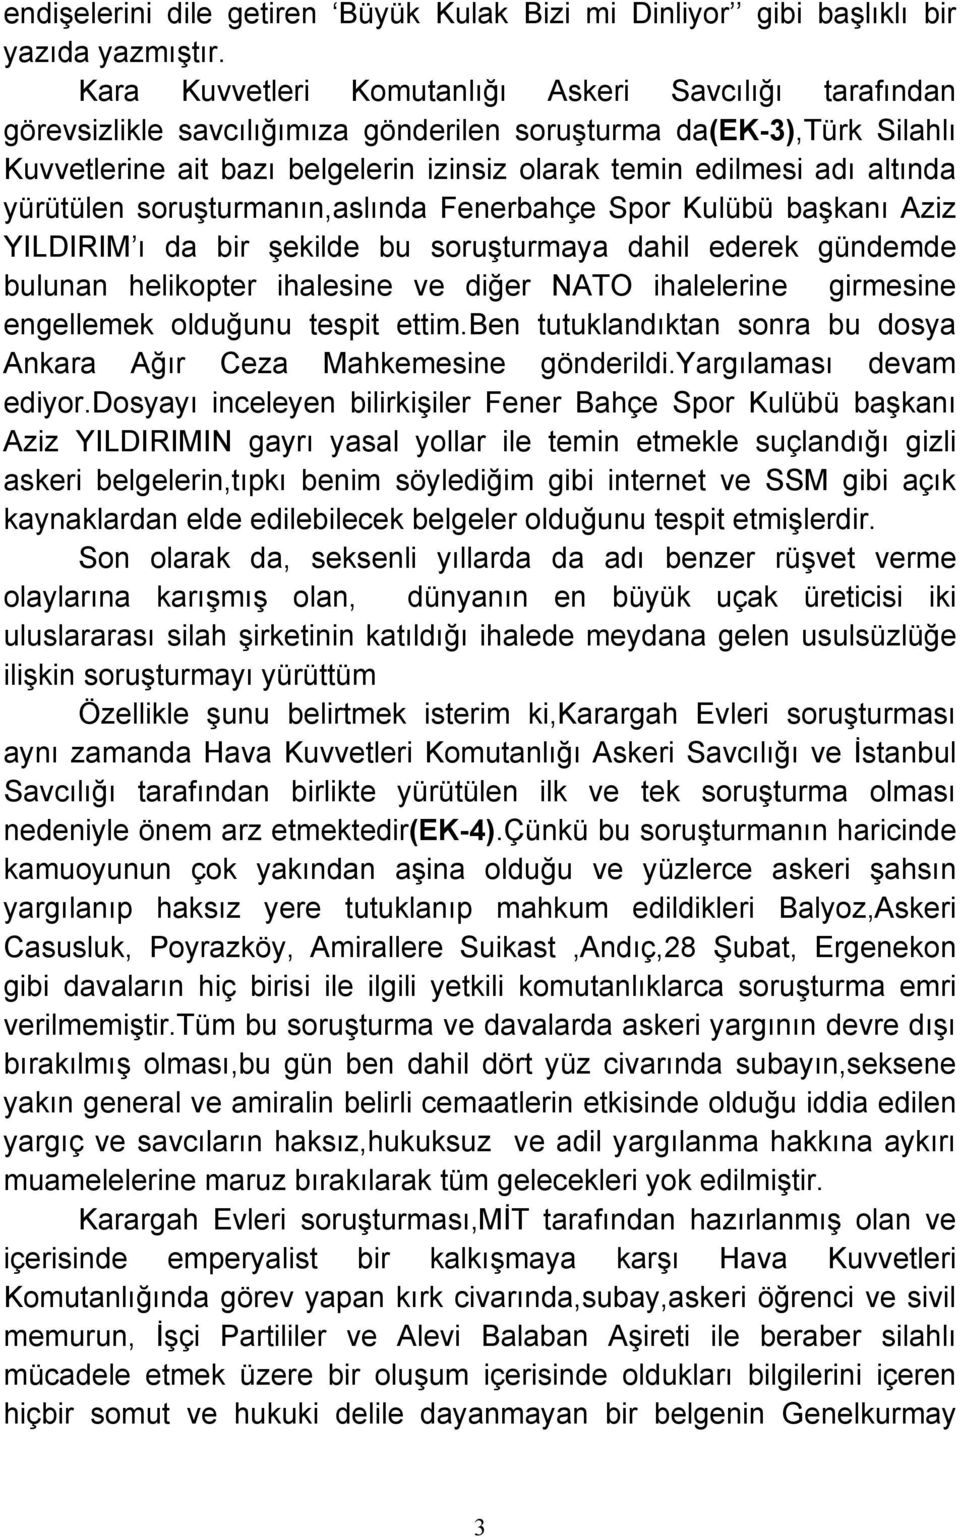 altında yürütülen soruşturmanın,aslında Fenerbahçe Spor Kulübü başkanı Aziz YILDIRIM ı da bir şekilde bu soruşturmaya dahil ederek gündemde bulunan helikopter ihalesine ve diğer NATO ihalelerine